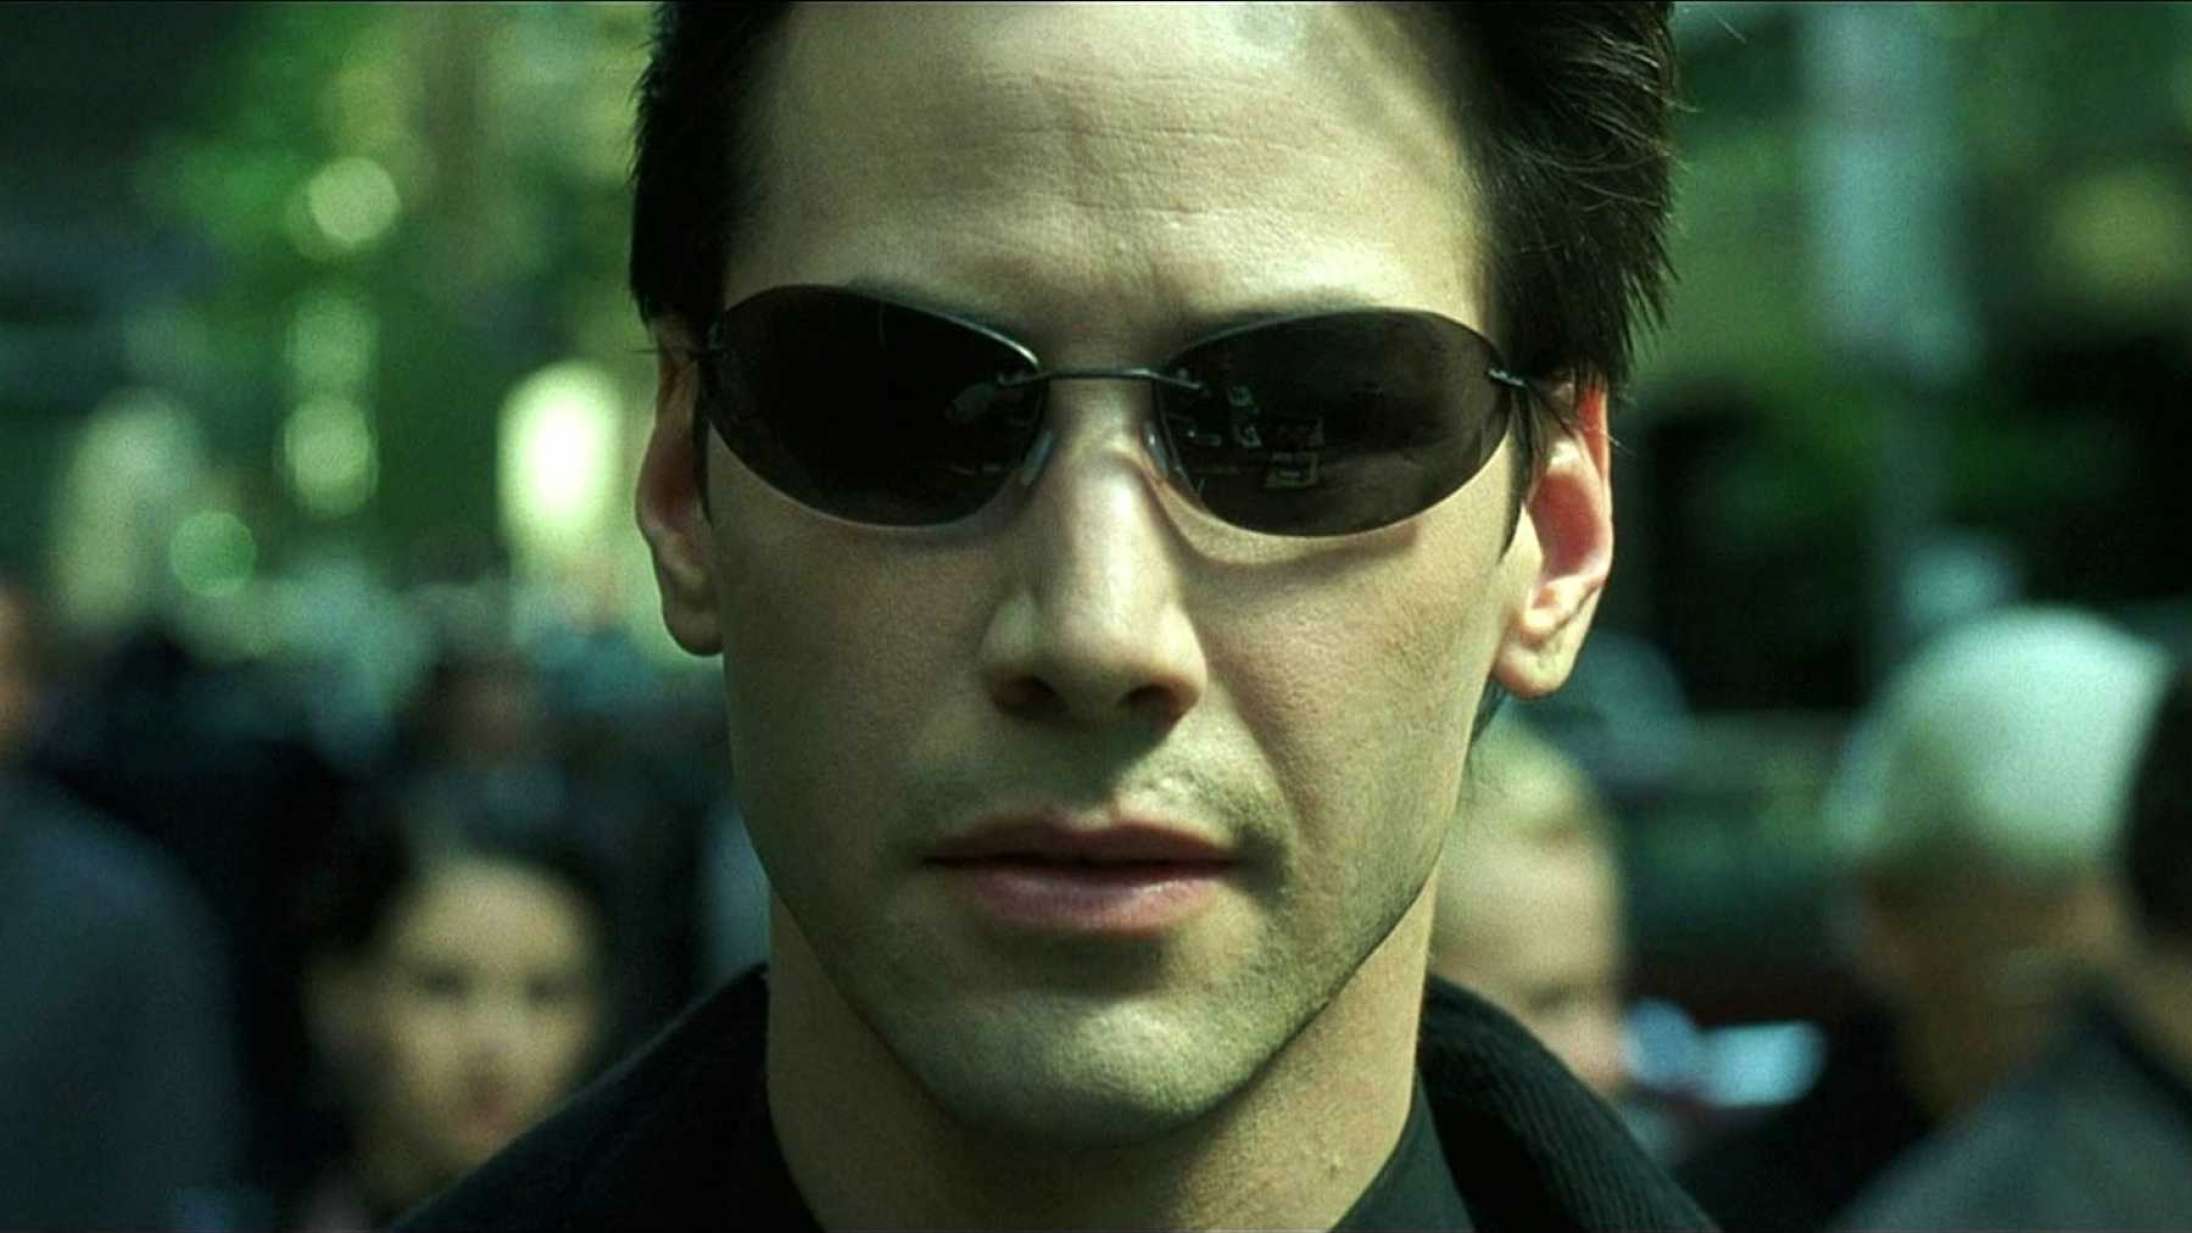 Keanu Reeves’ kontrakt forbyder CGI-redigering af hans skuespil – »De tilføjede en tåre til mit ansigt«